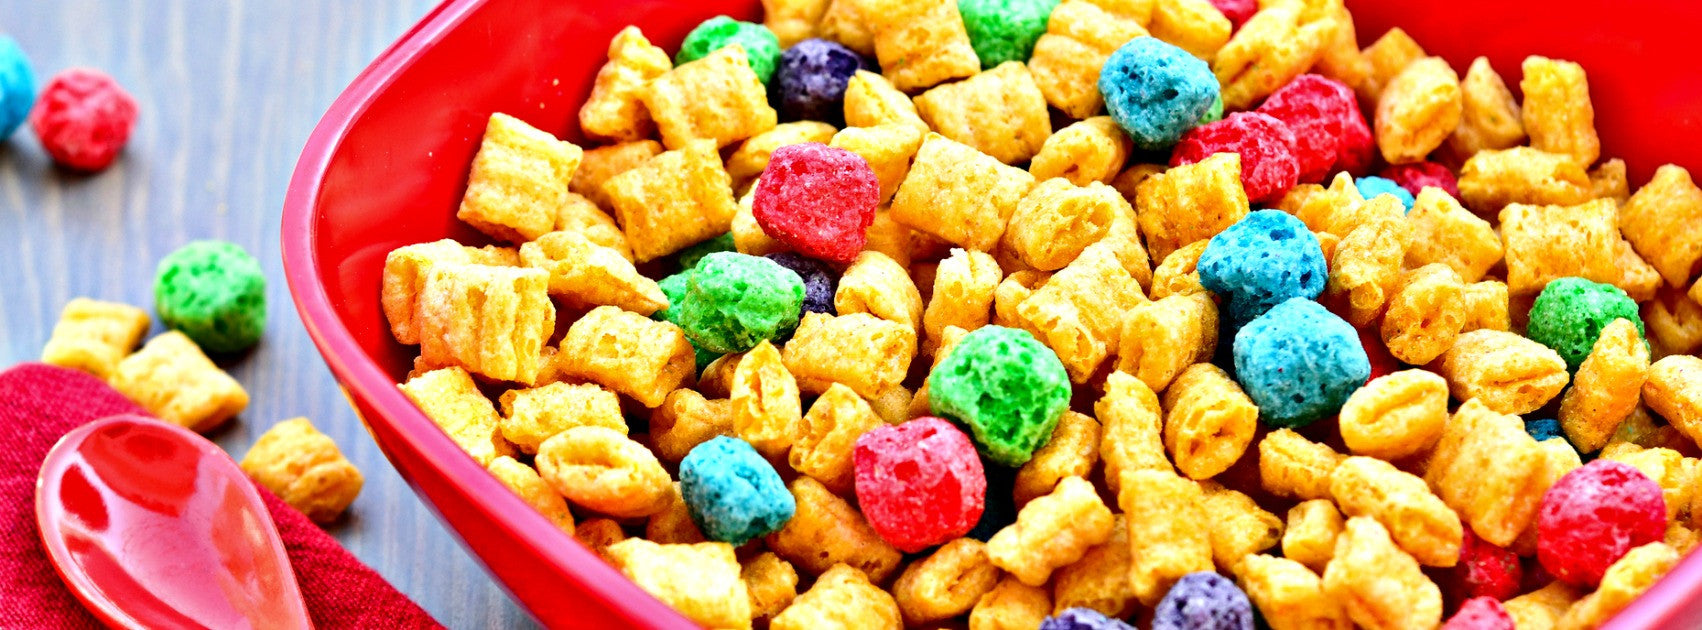 unhealthy cereals